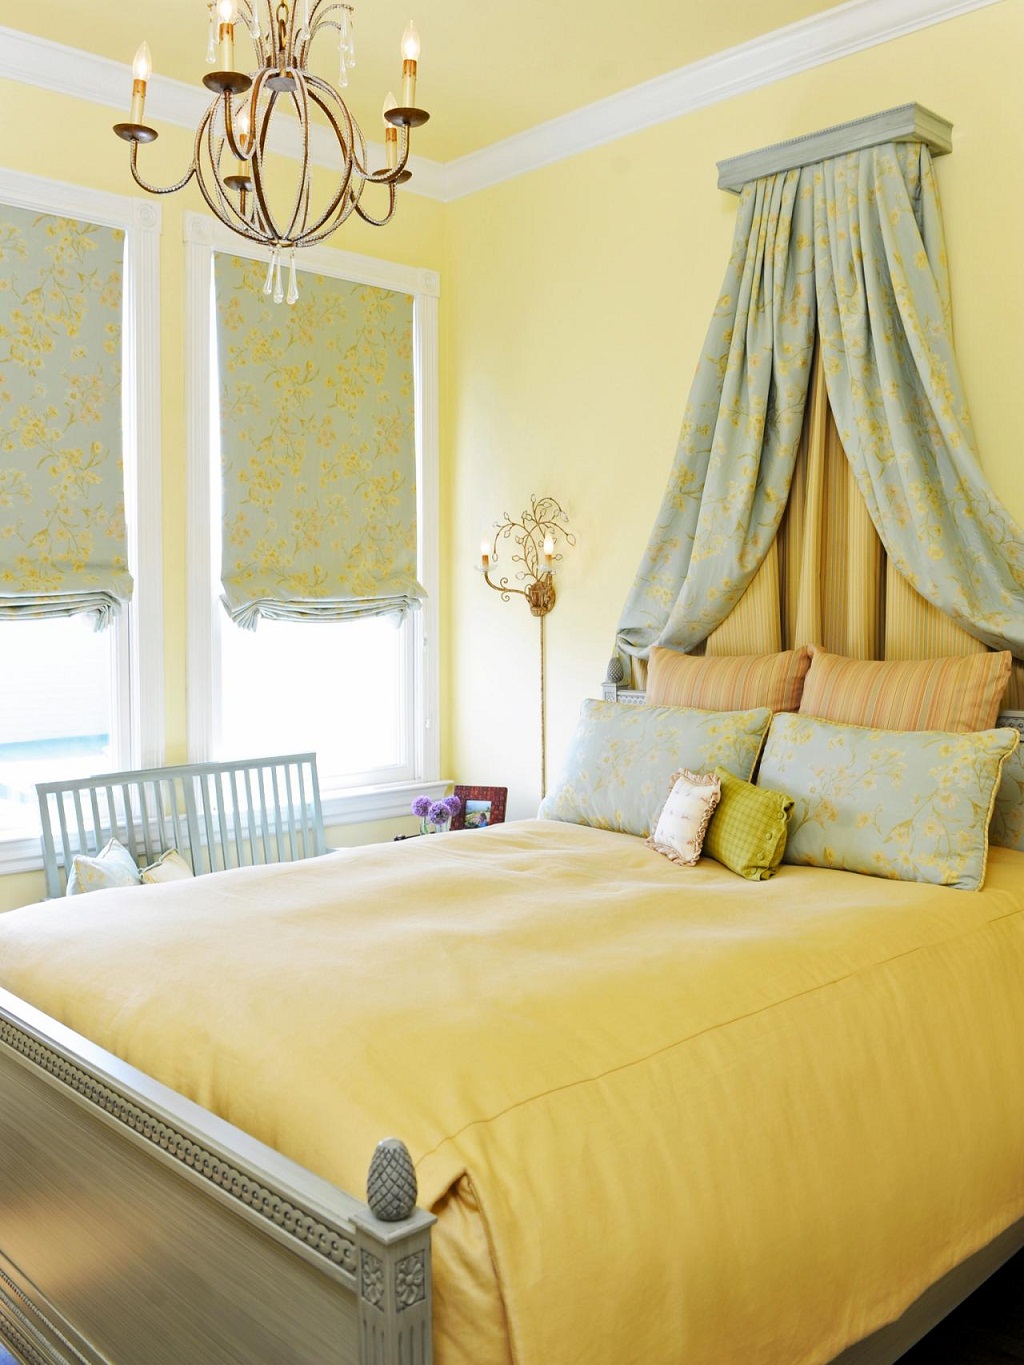 Trang trí phòng ngủ với sắc vàng ấm áp mang lại sự thư giãn tuyệt đối